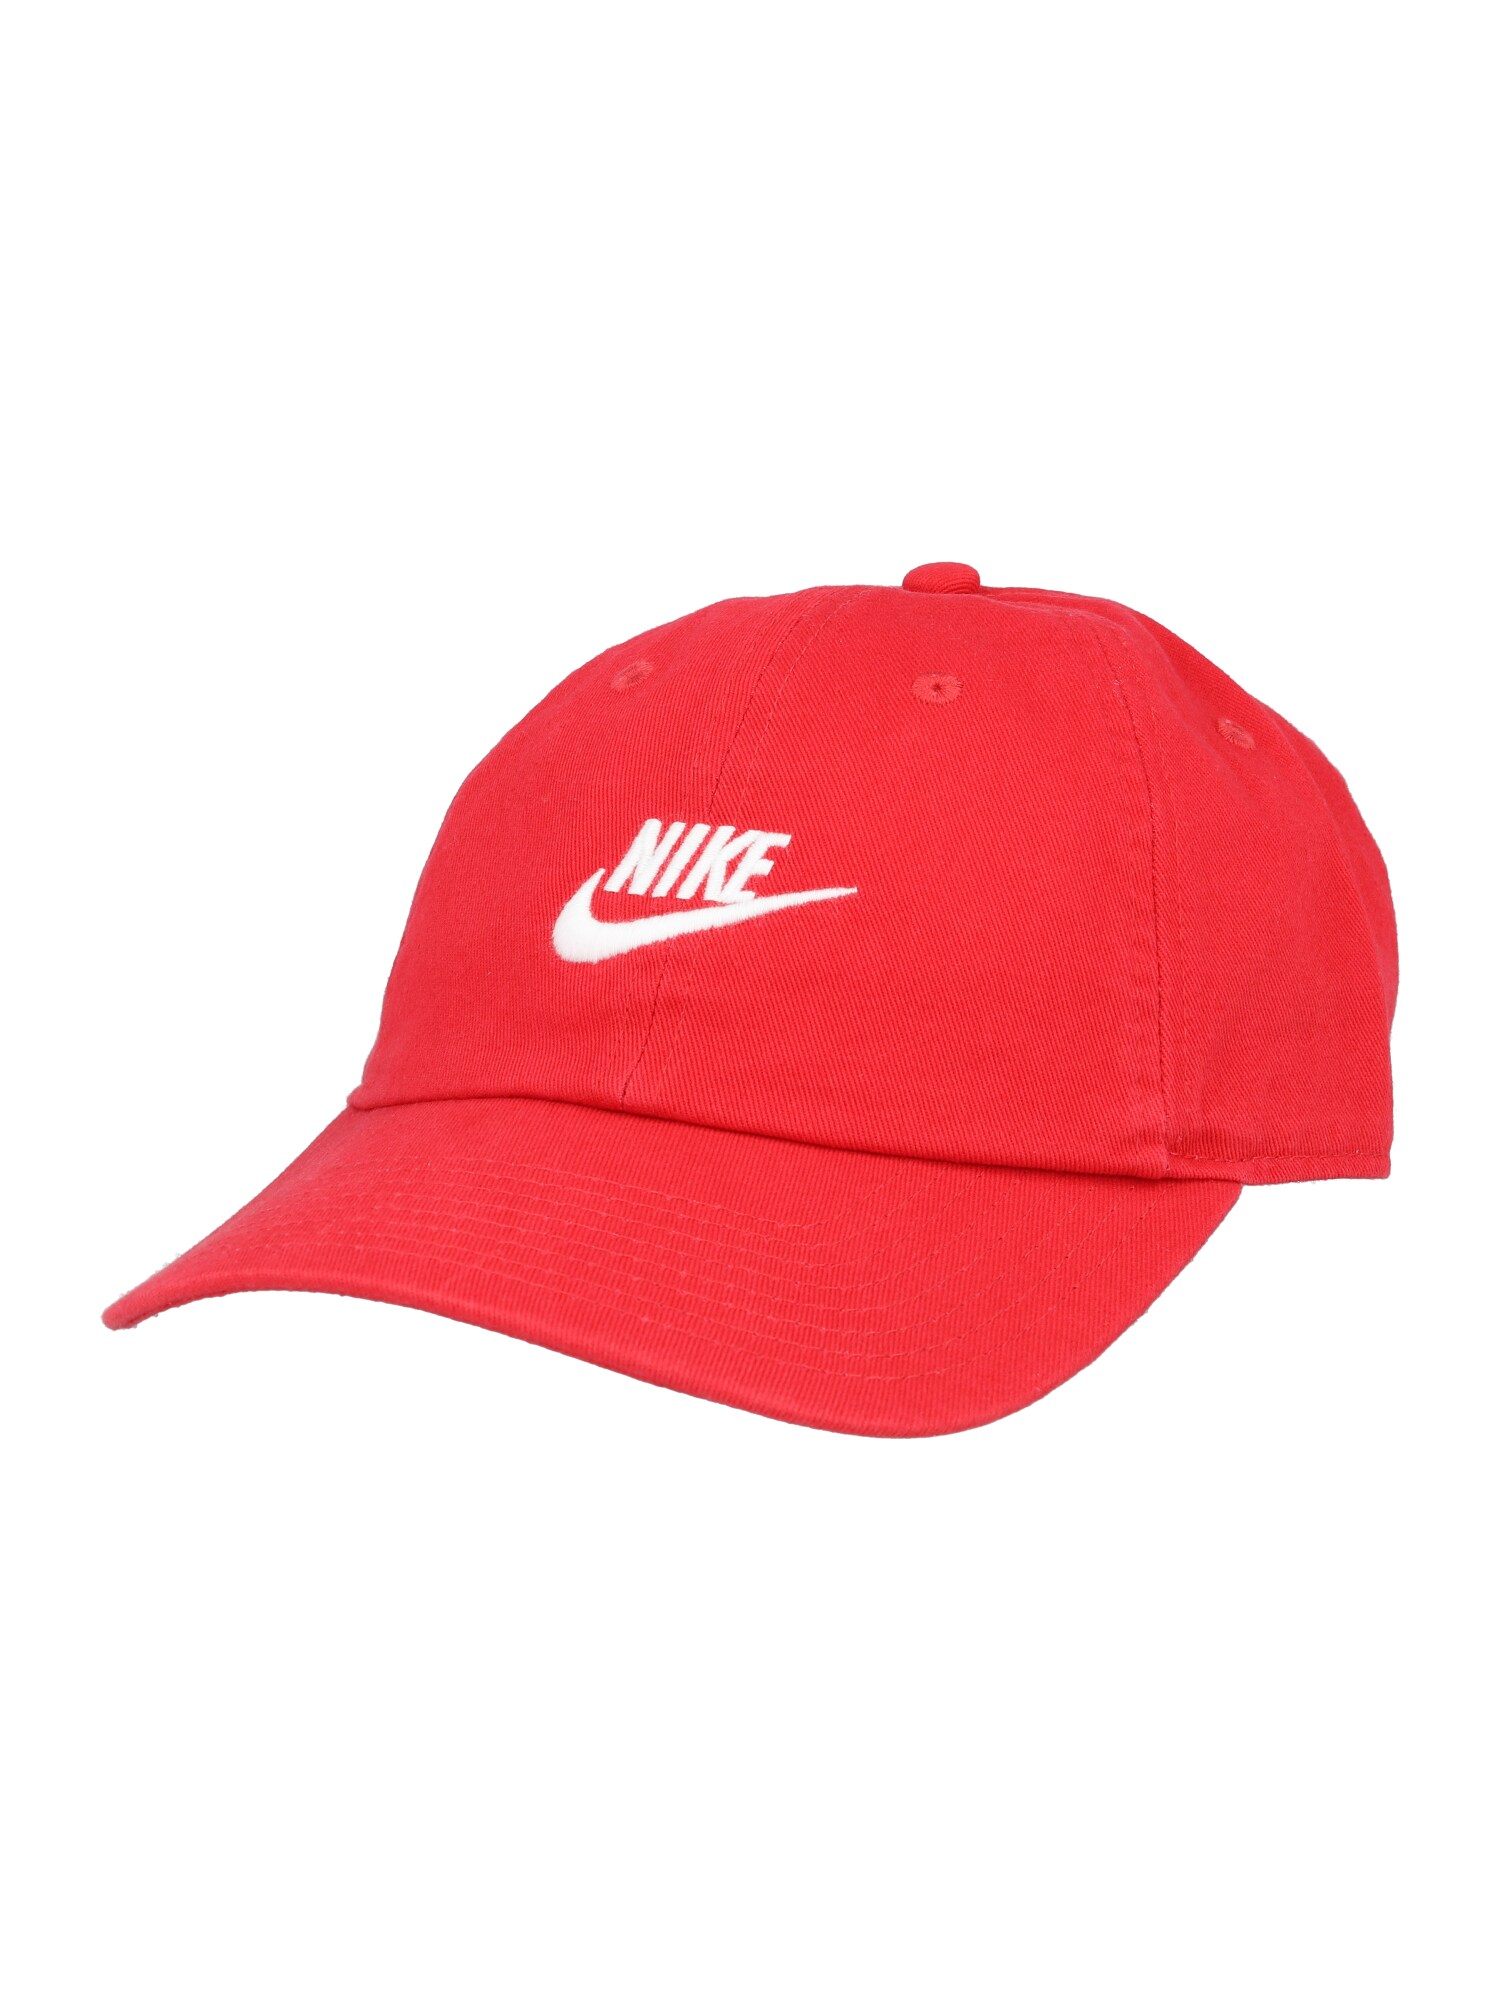 Nike Sportswear Nike Sportswear Cap 'H86' rot / weiß